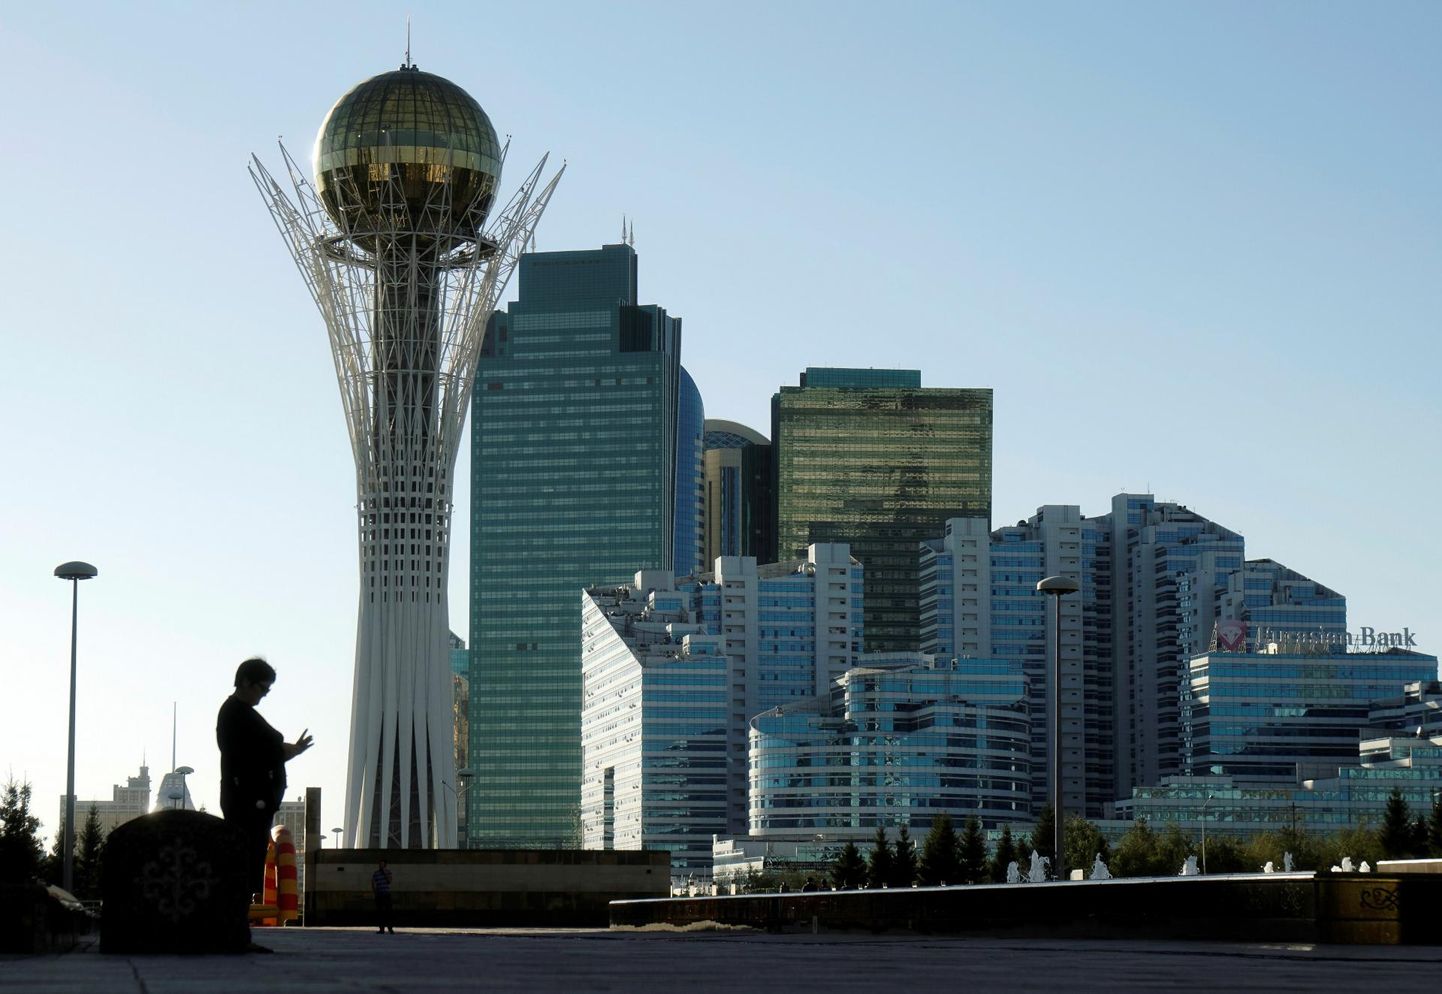 Kuigi seda täielikult takistada ei suudeta, püüavad Kesk-Aasia riigid sanktsioonie järgida, et mitte sattuda lääneriikide musta nimekirja. Pildil Kasahstani pealinn Astana. 